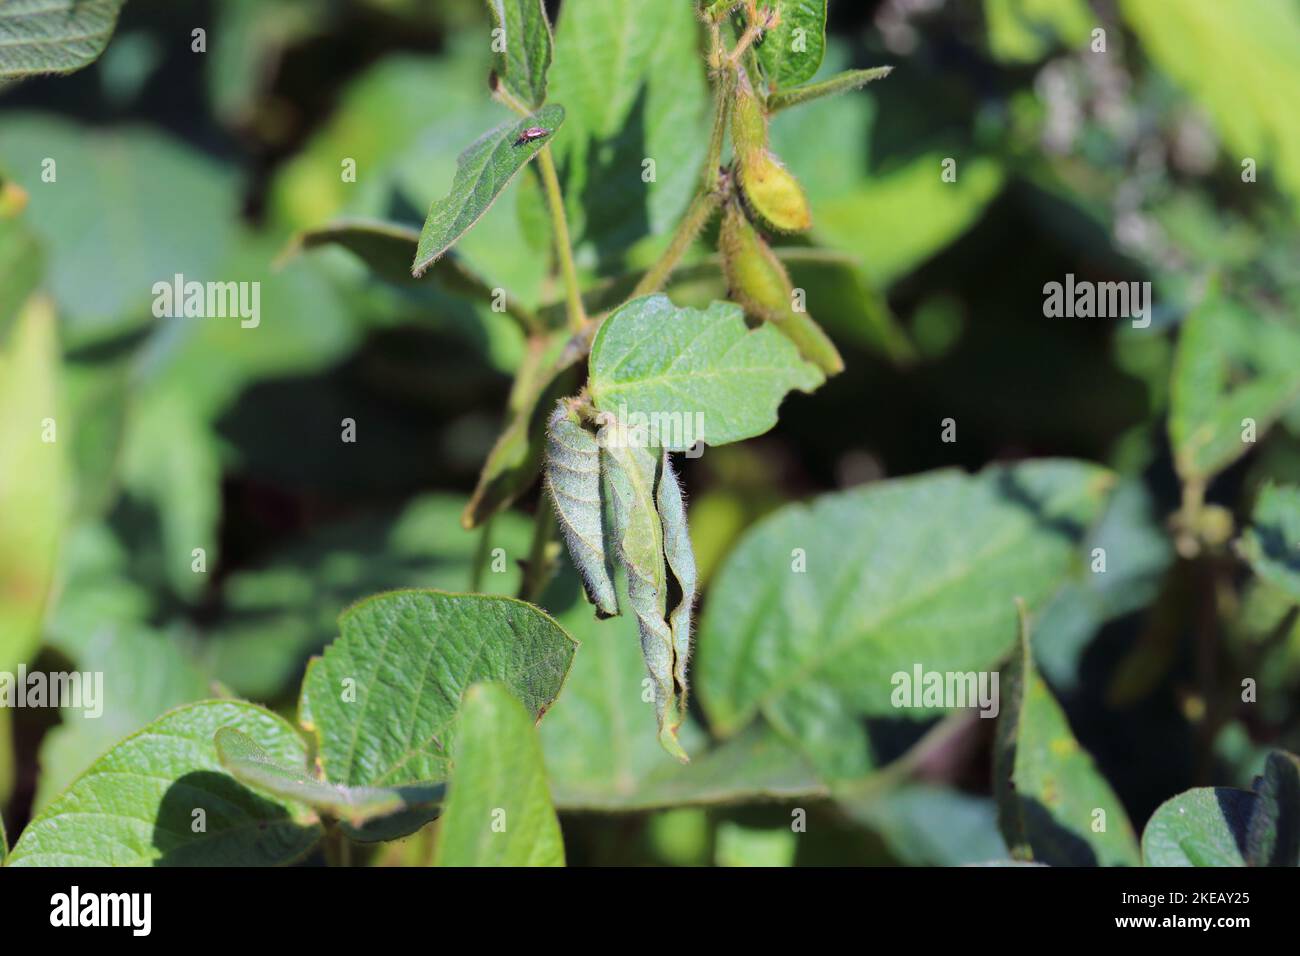 Durch Lupinenkäfer beschädigte Sojabohnenpflanzen - Charagmus (ehemals Sitona) gressorius und Griseus - eine Art von Weevils Curculionidae, Schädling von Lupinen. Stockfoto